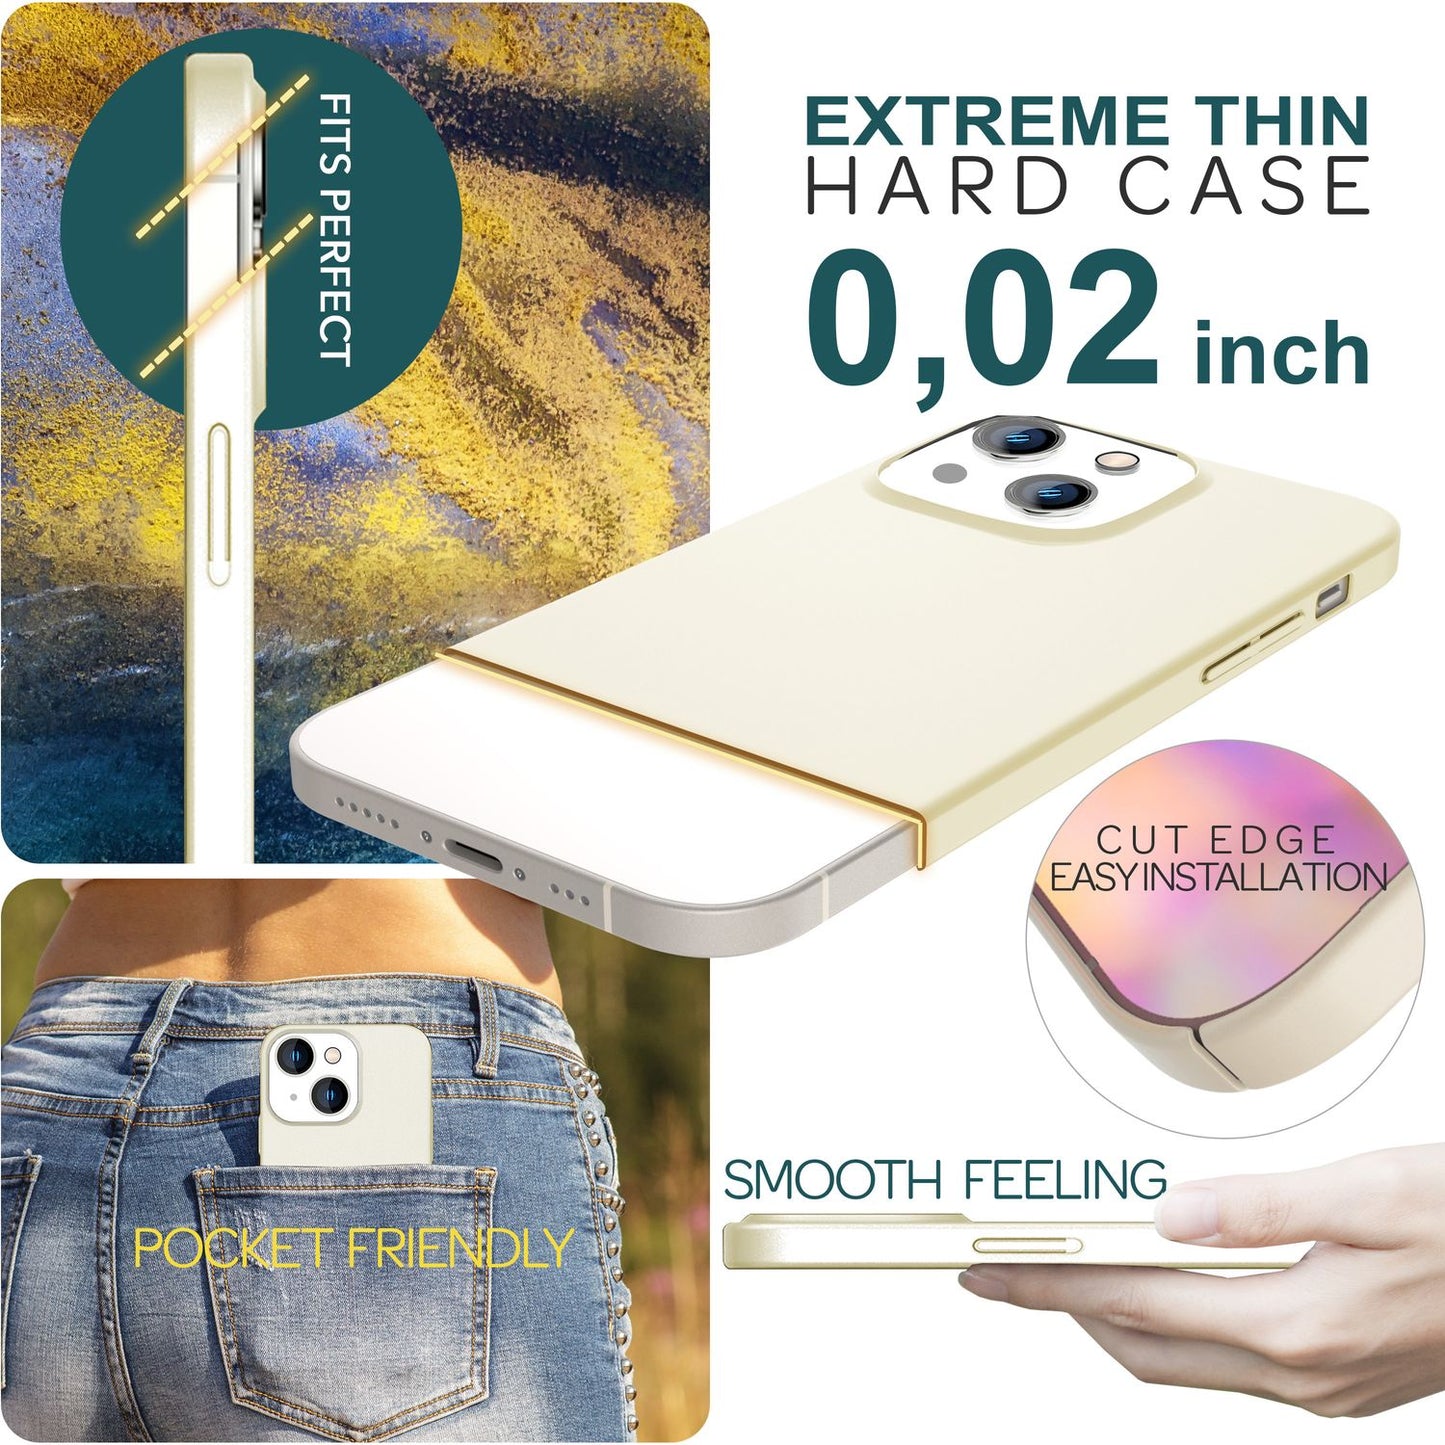 Dünne 0,5mm Hülle für iPhone 15 Hard Case Matt Ultra Slim Handyhülle Schutzhülle